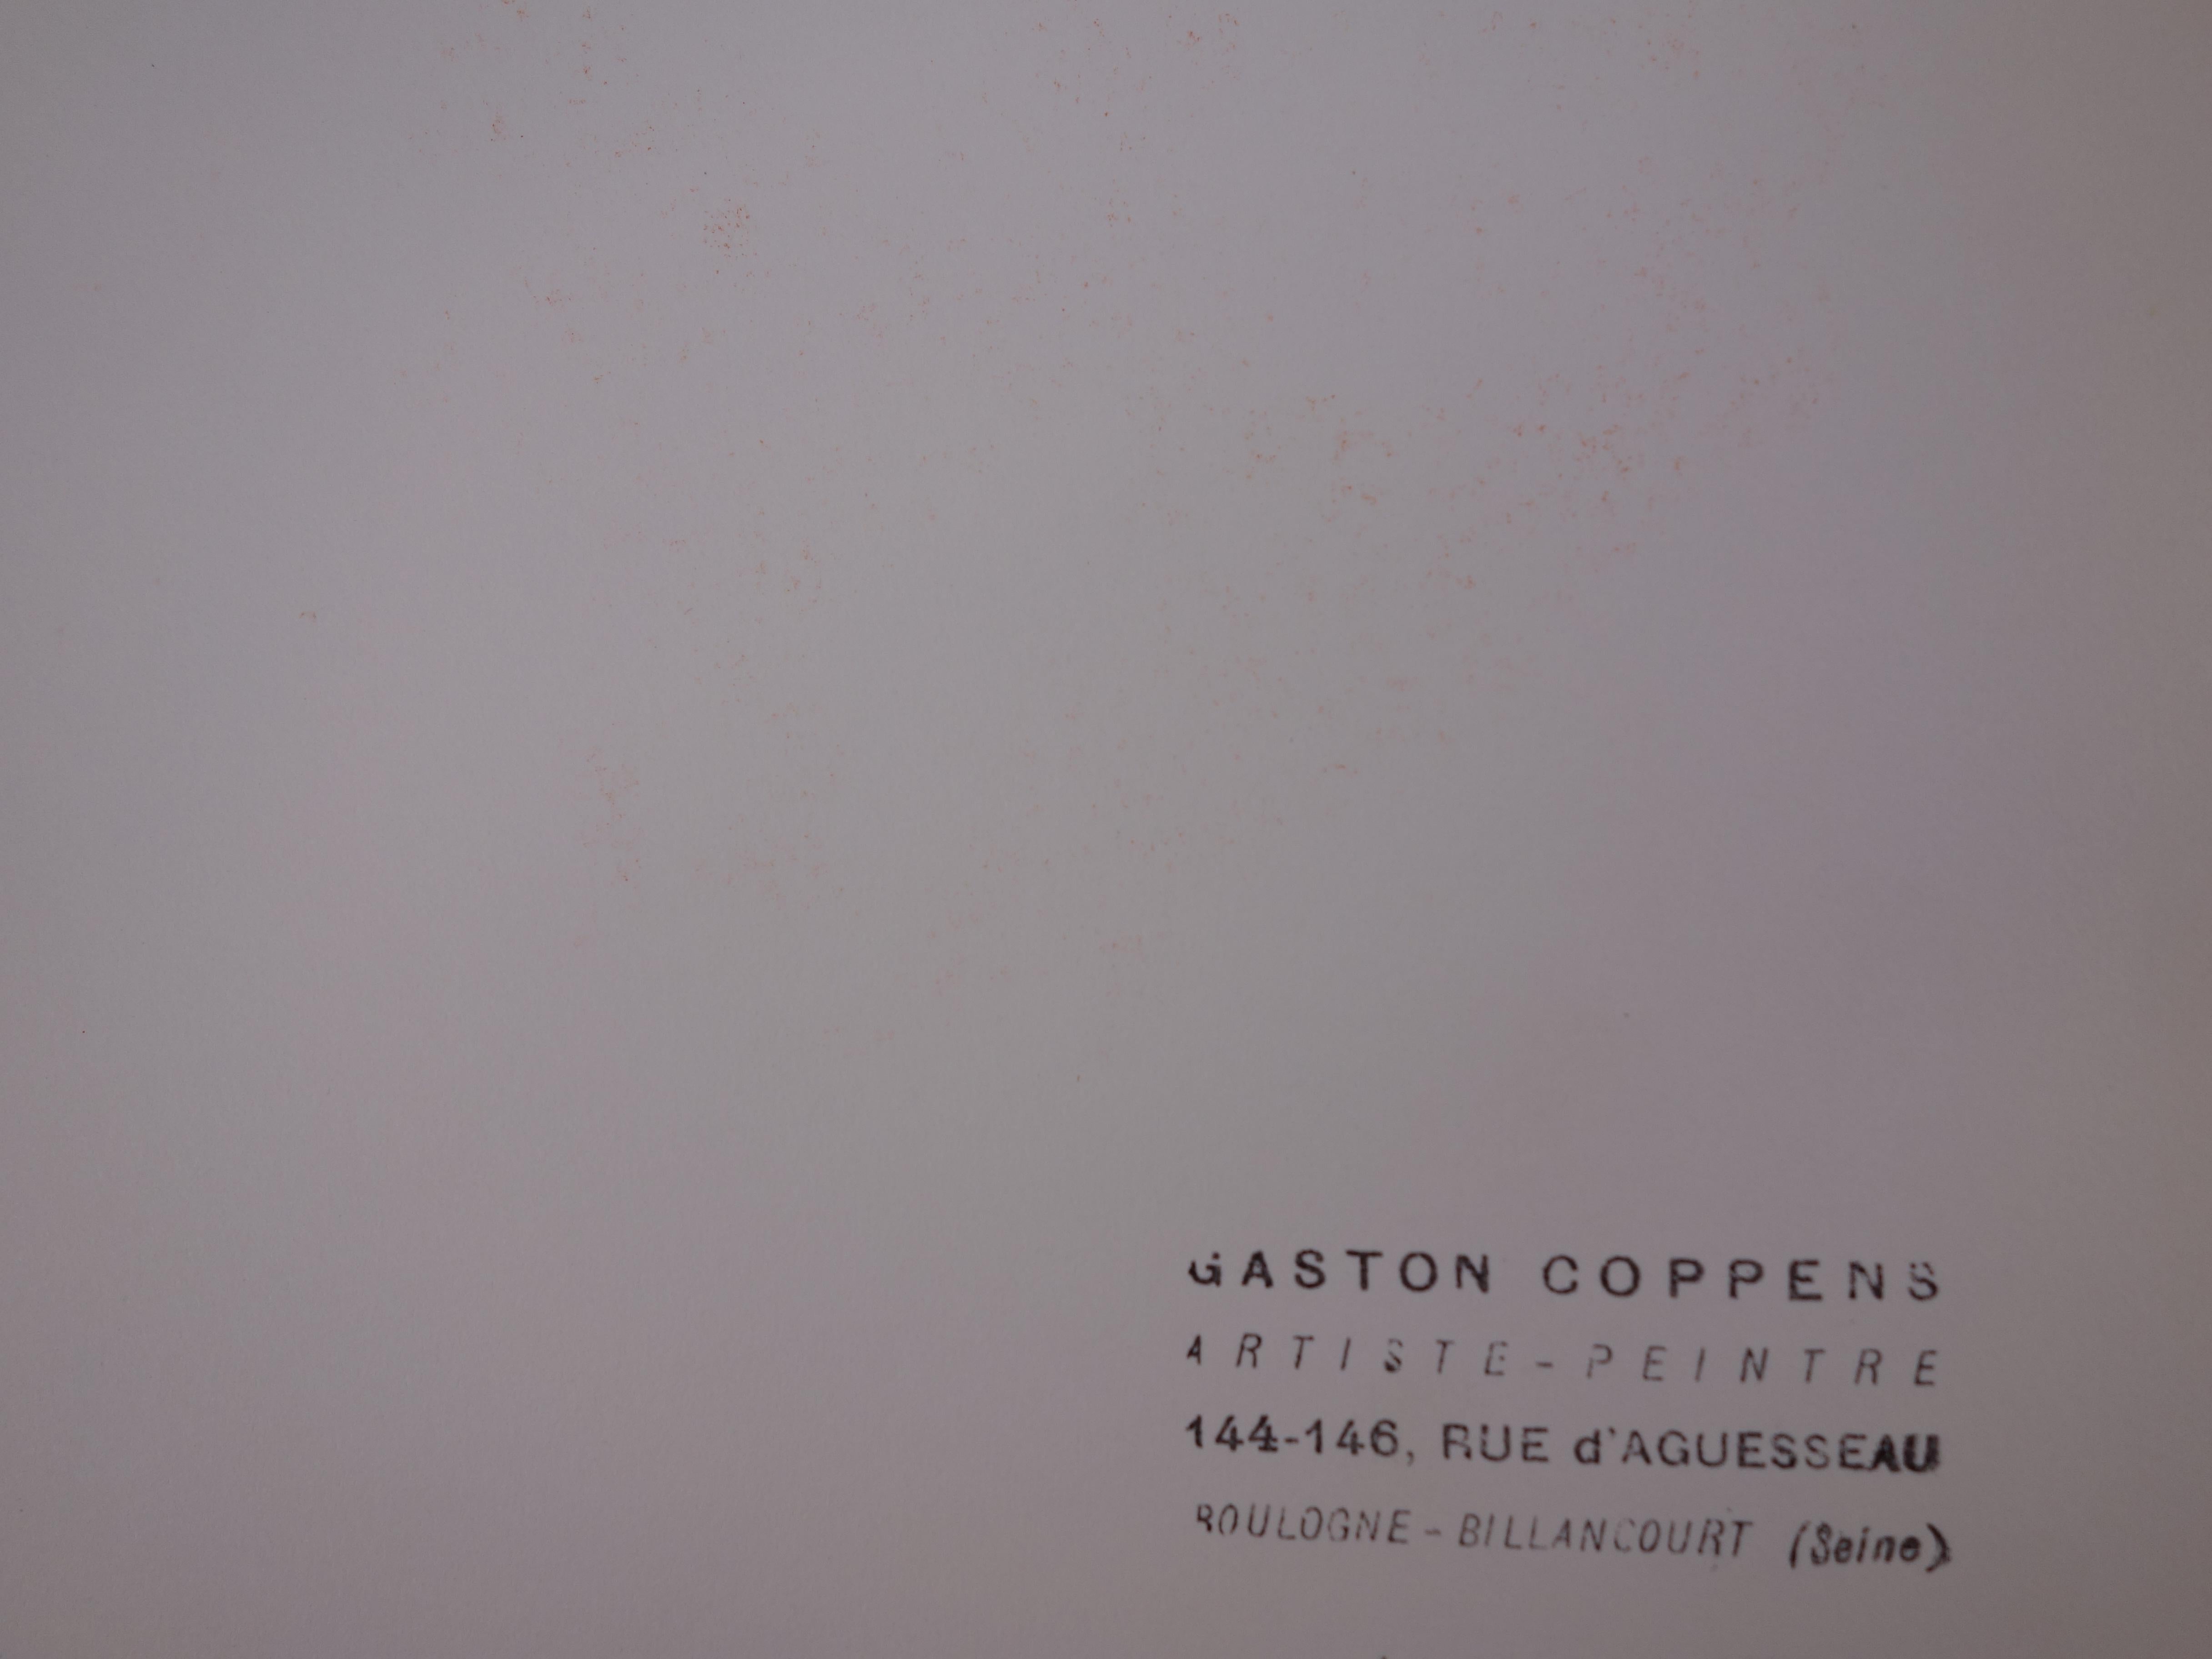 Gaston COPPENS (1909 - 2002)
Nu en vert 

Dessin original au fusain
Porte la signature estampillée de l'artiste
Cachet de l'atelier de l'artiste au dos
Sur papier vélin 41 x 32 cm (environ 16 x 13 pouces)

Excellent état

Gaston Coppens a étudié la